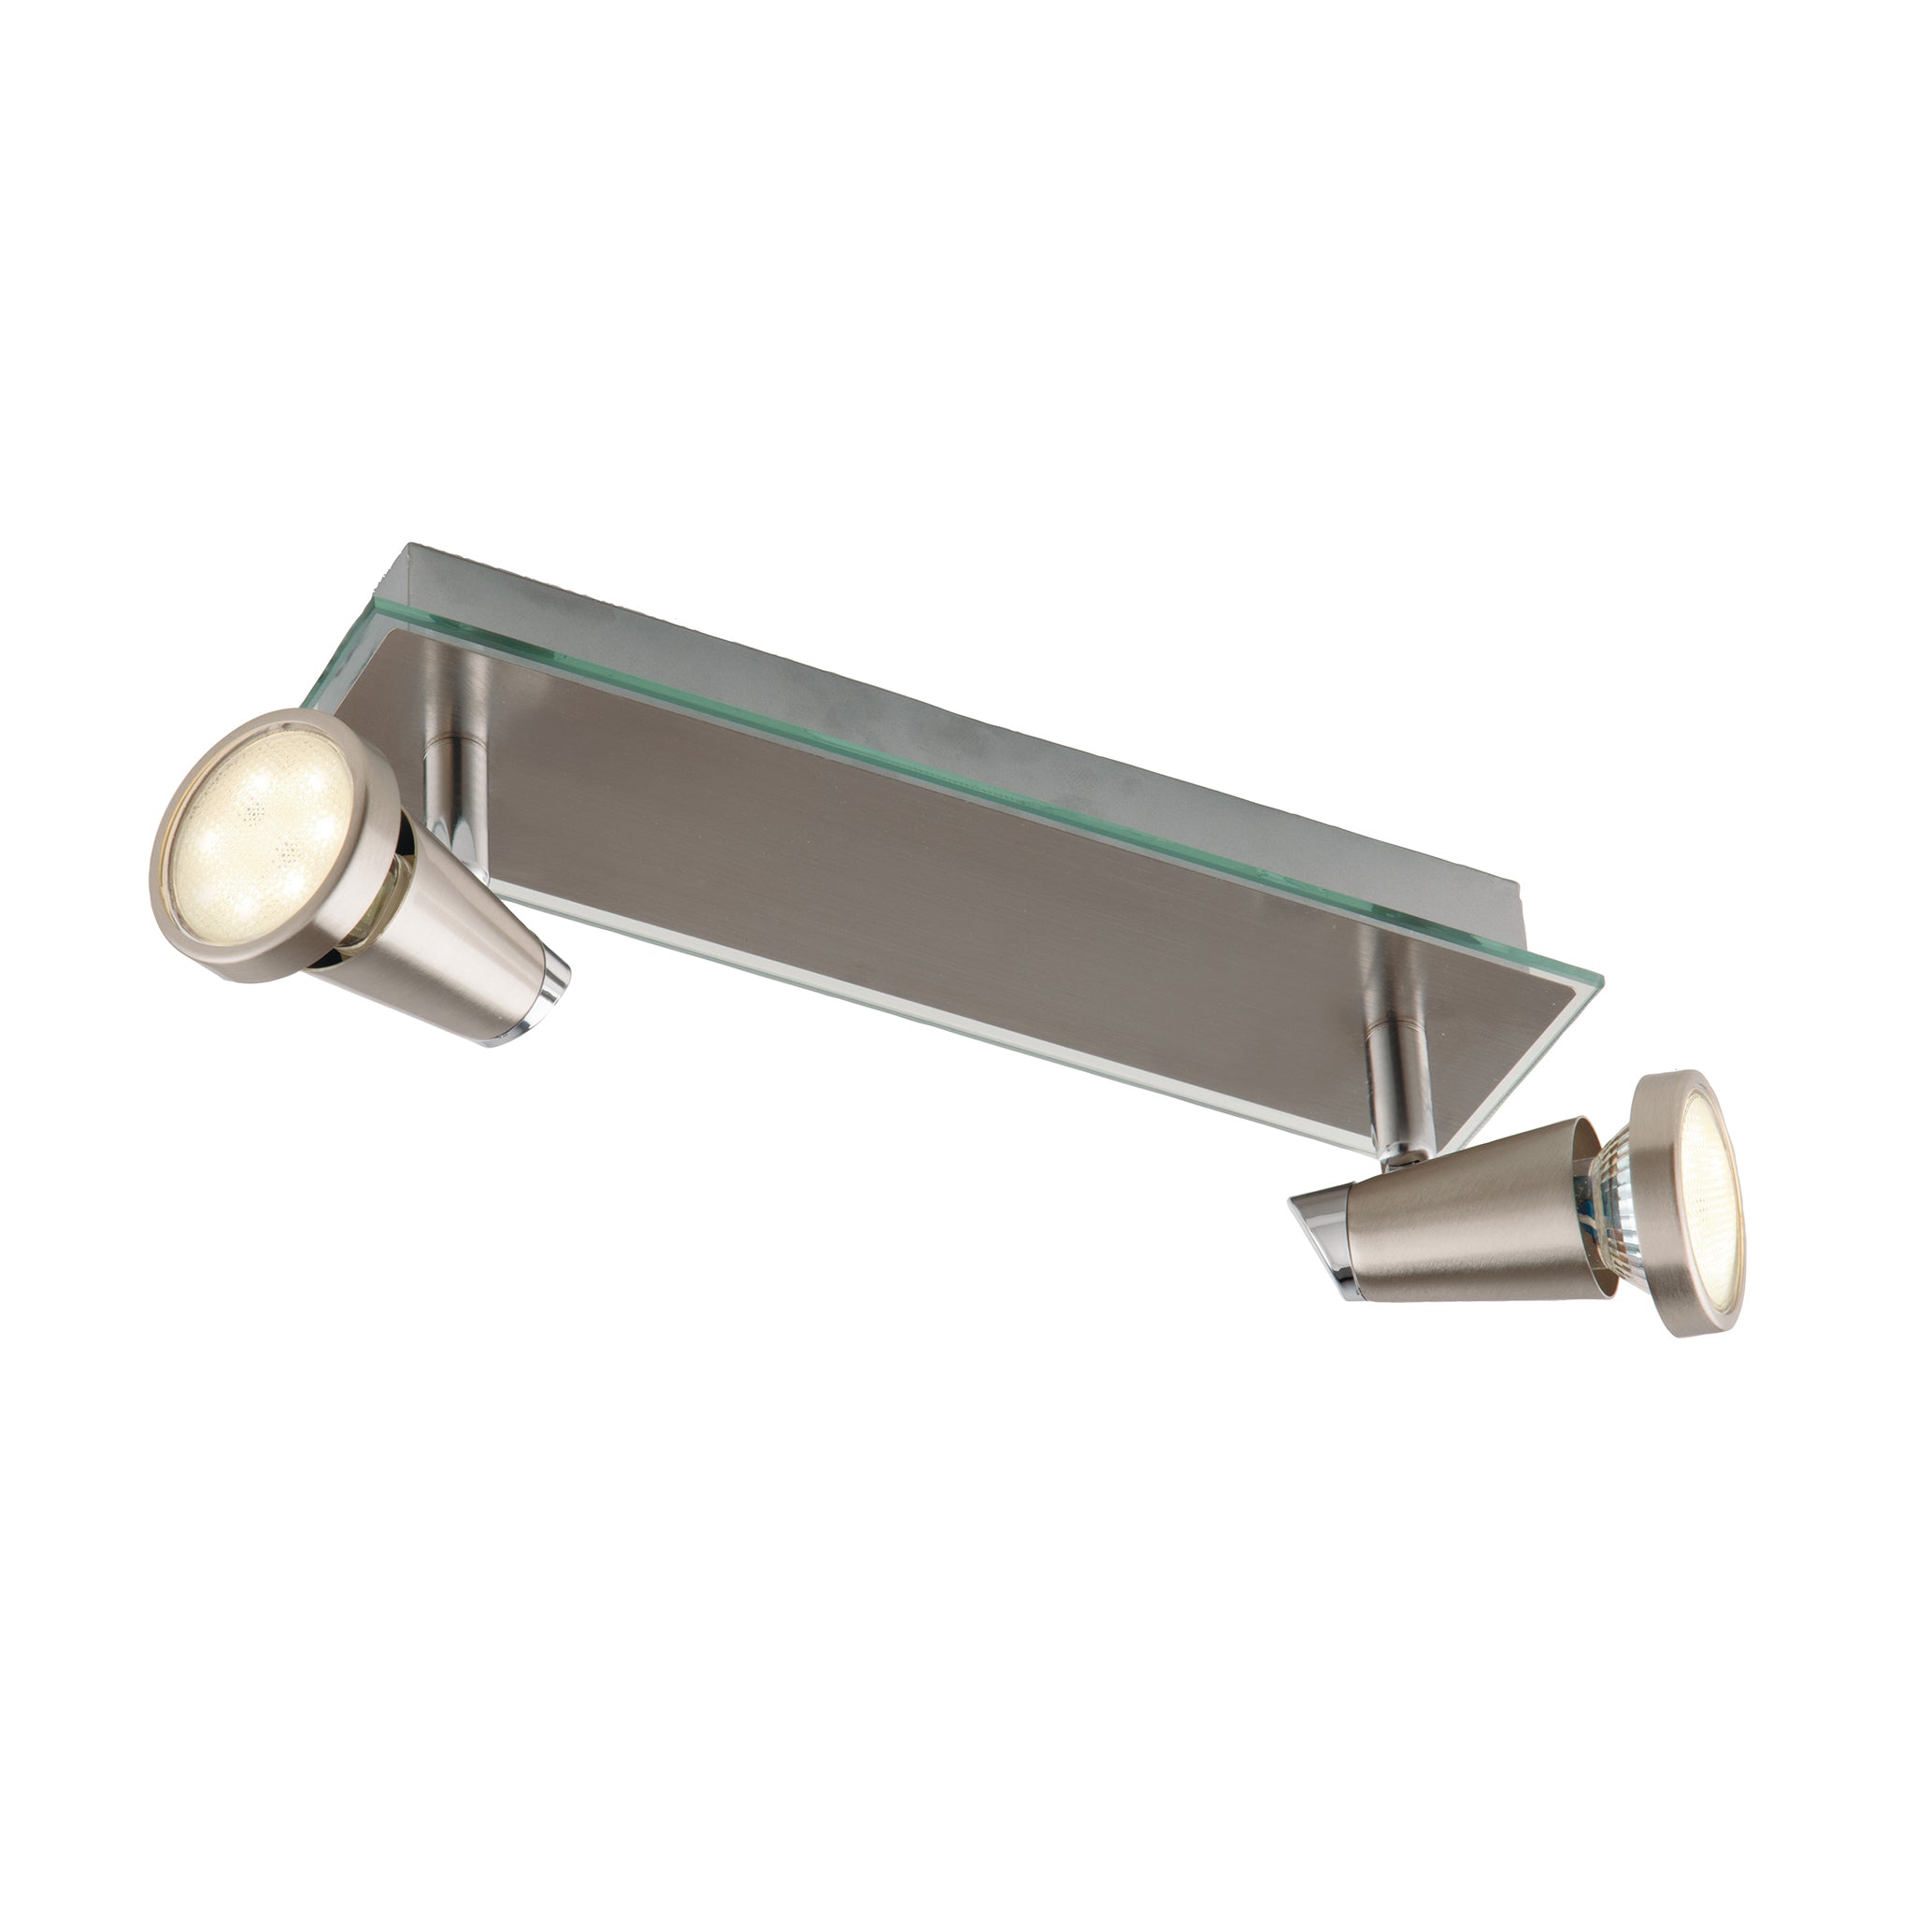 Spot LED MIAMI in metallo con finitura in nichel spazzolato con con cornice trasparenti, luci orientabili e lampadine incluse